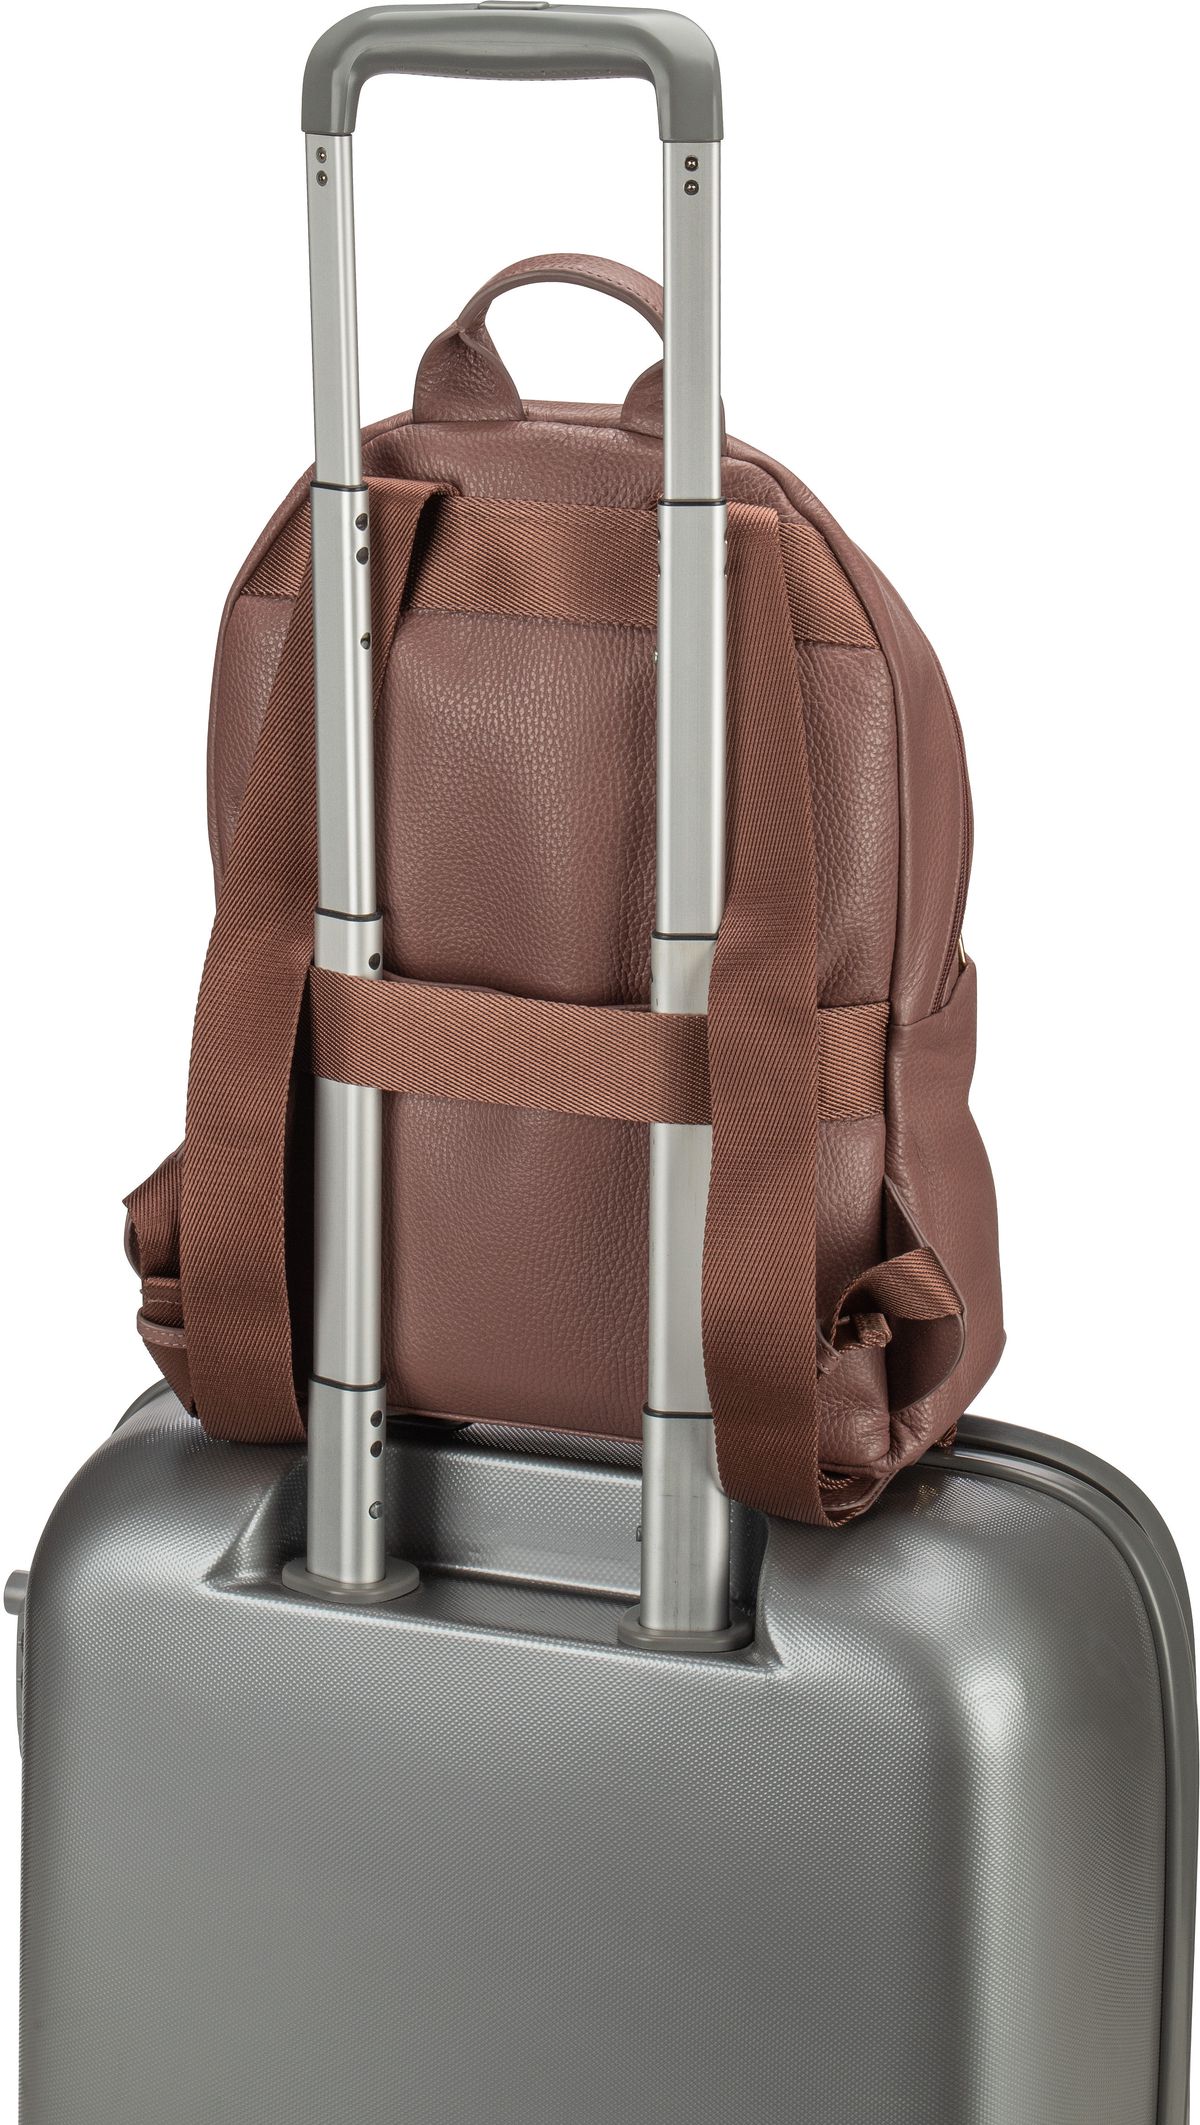 Mandarina Duck Mellow Leather Medium Backpack FZT35 - Balsamic